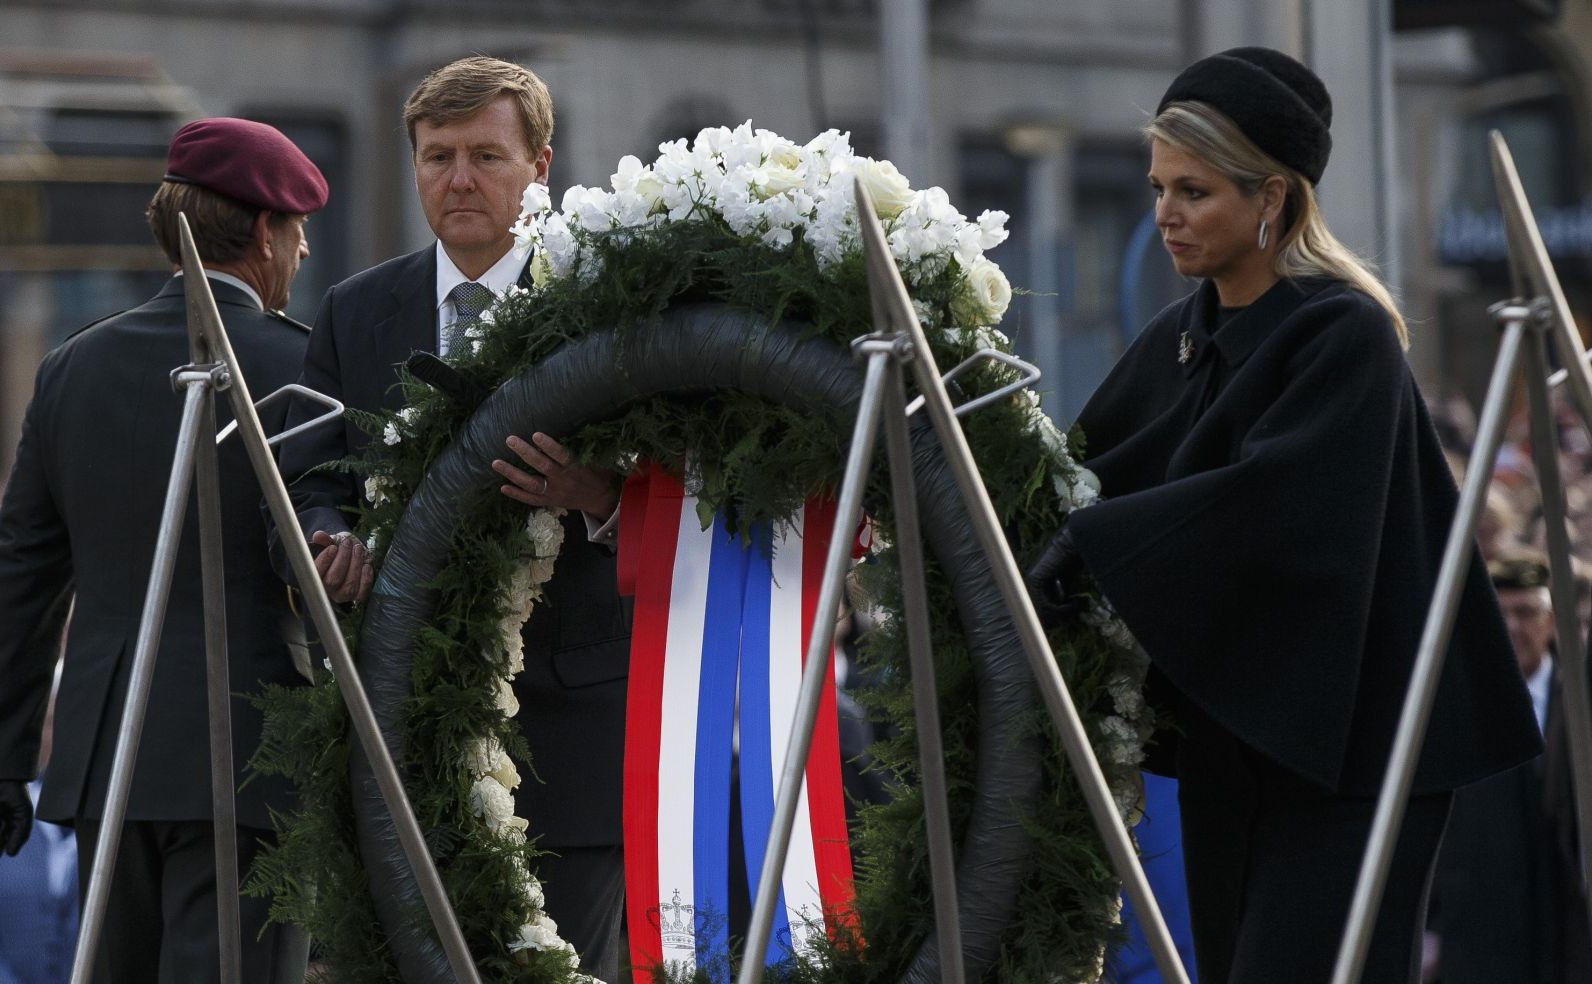 Kranslegging door koning Willem-Alexander en koningin Máxima tijdens Dodenherdenking (Nationaal Comité)